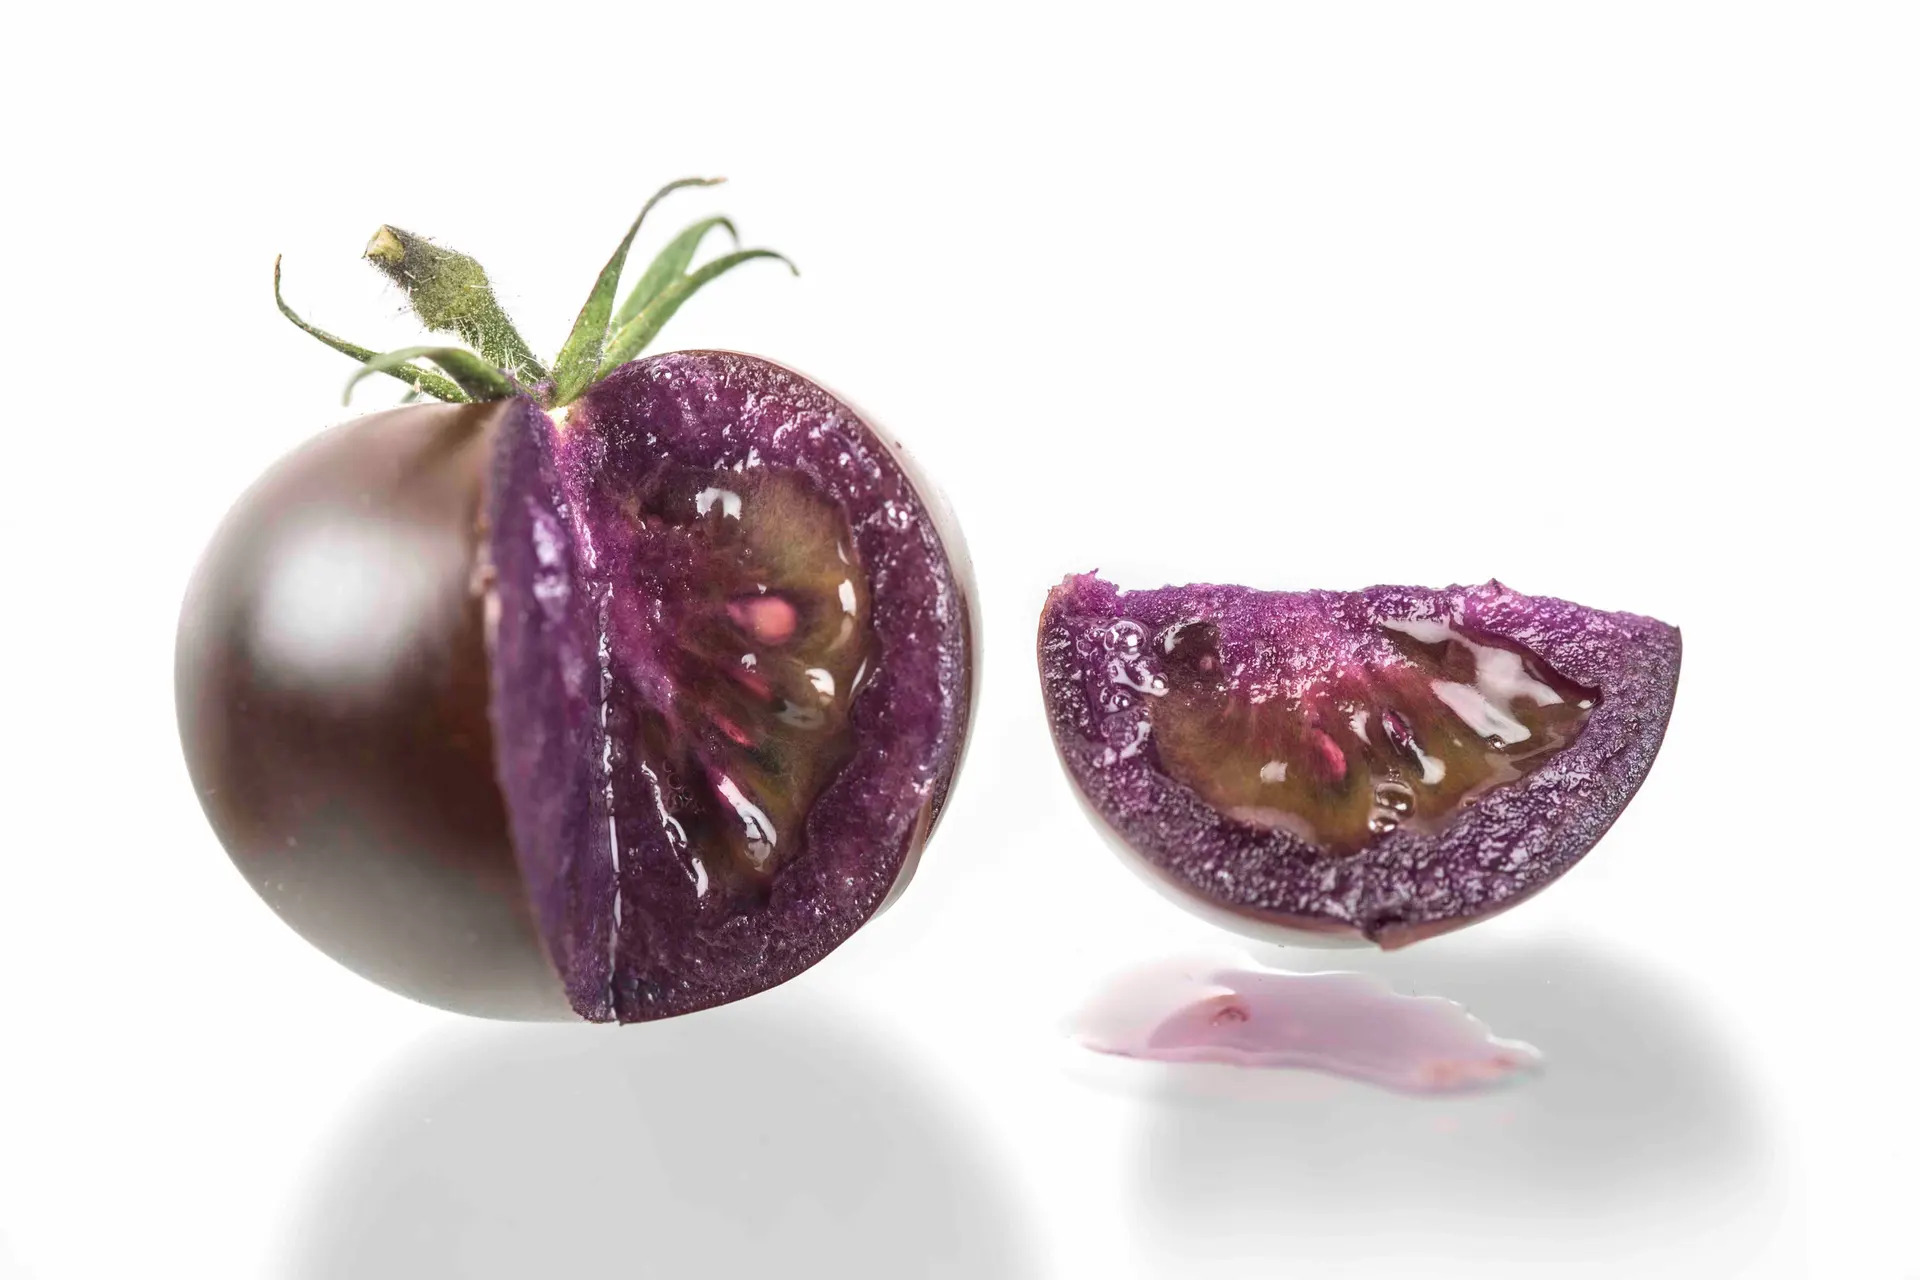 Kansere karşı genetiği değiştirilmiş domatesler üretildi